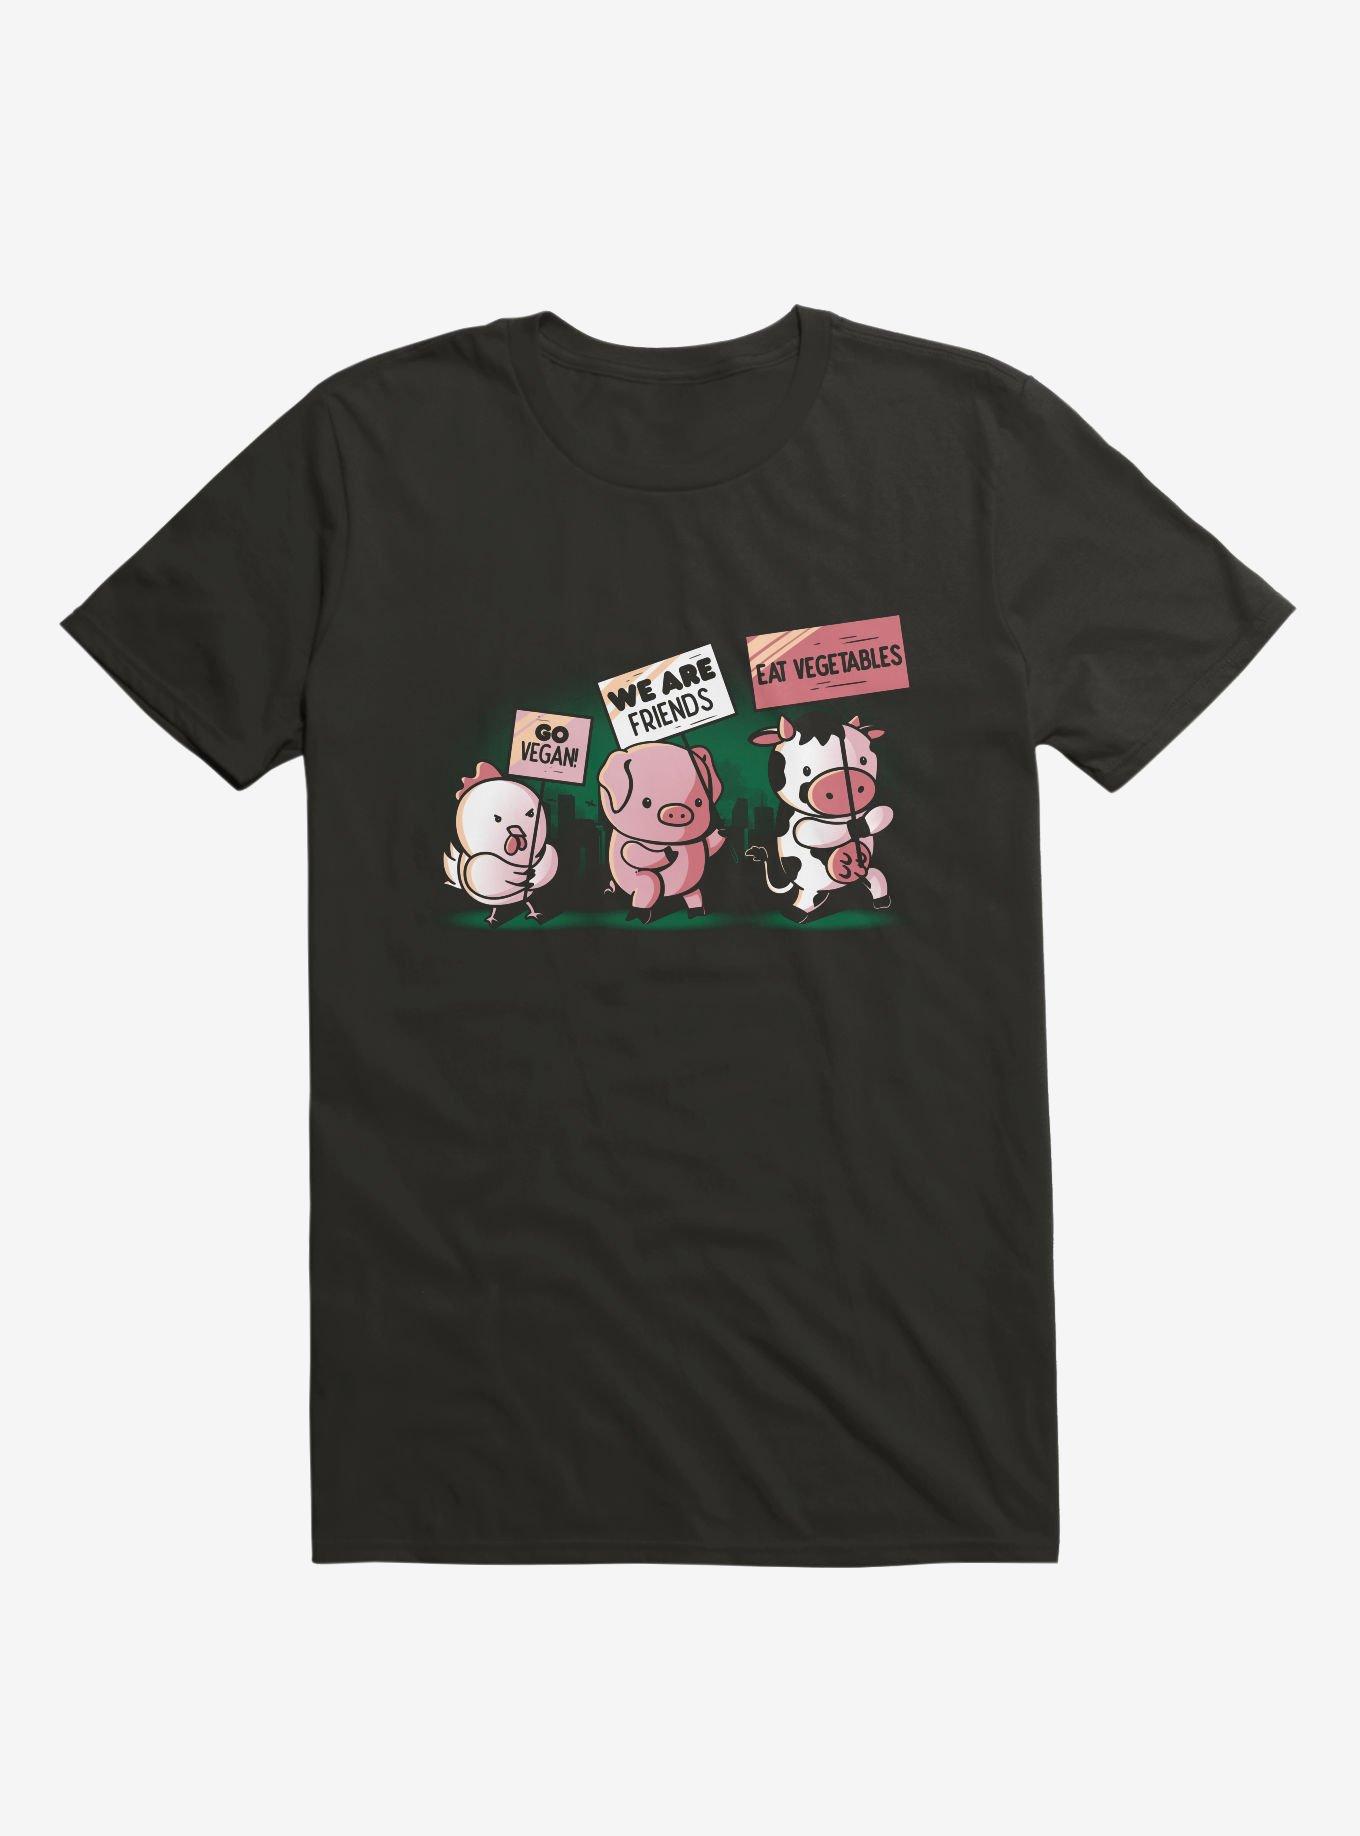 Go Vegan! T-Shirt, BLACK, hi-res